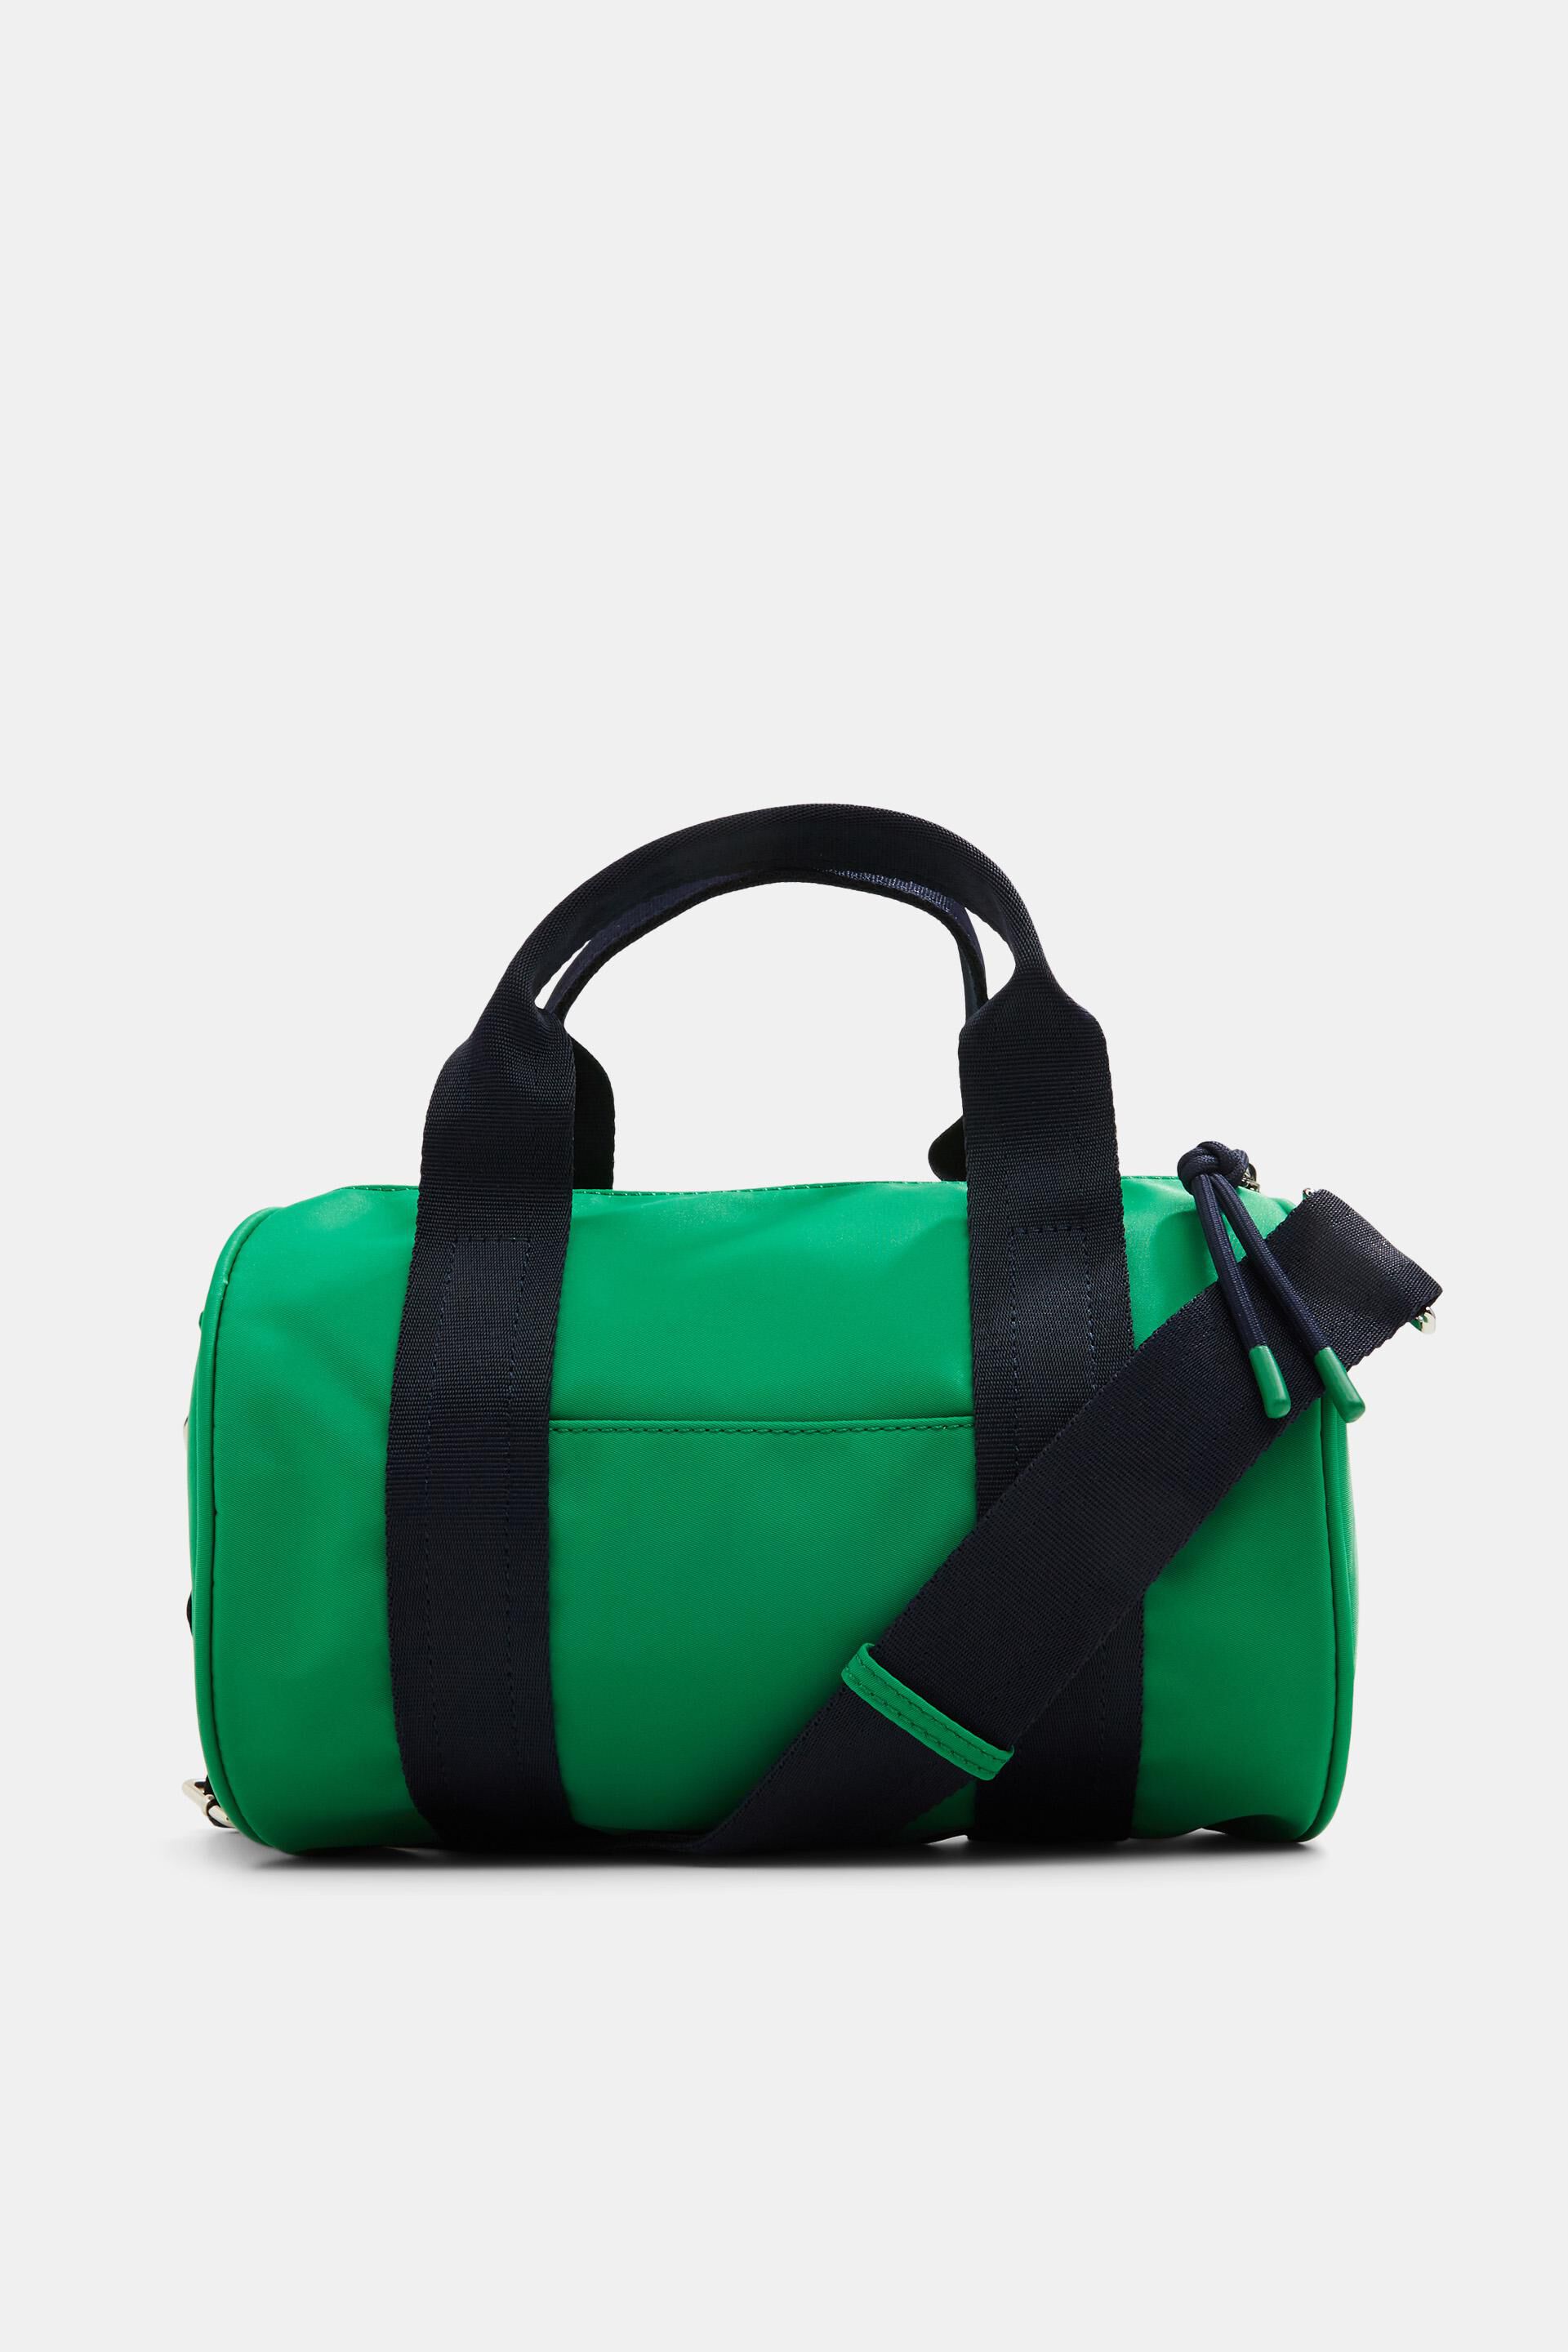 Bespaar 29% Esprit Saddle-tas Van Canvas in het Groen Dames Tassen voor voor Emmertassen 